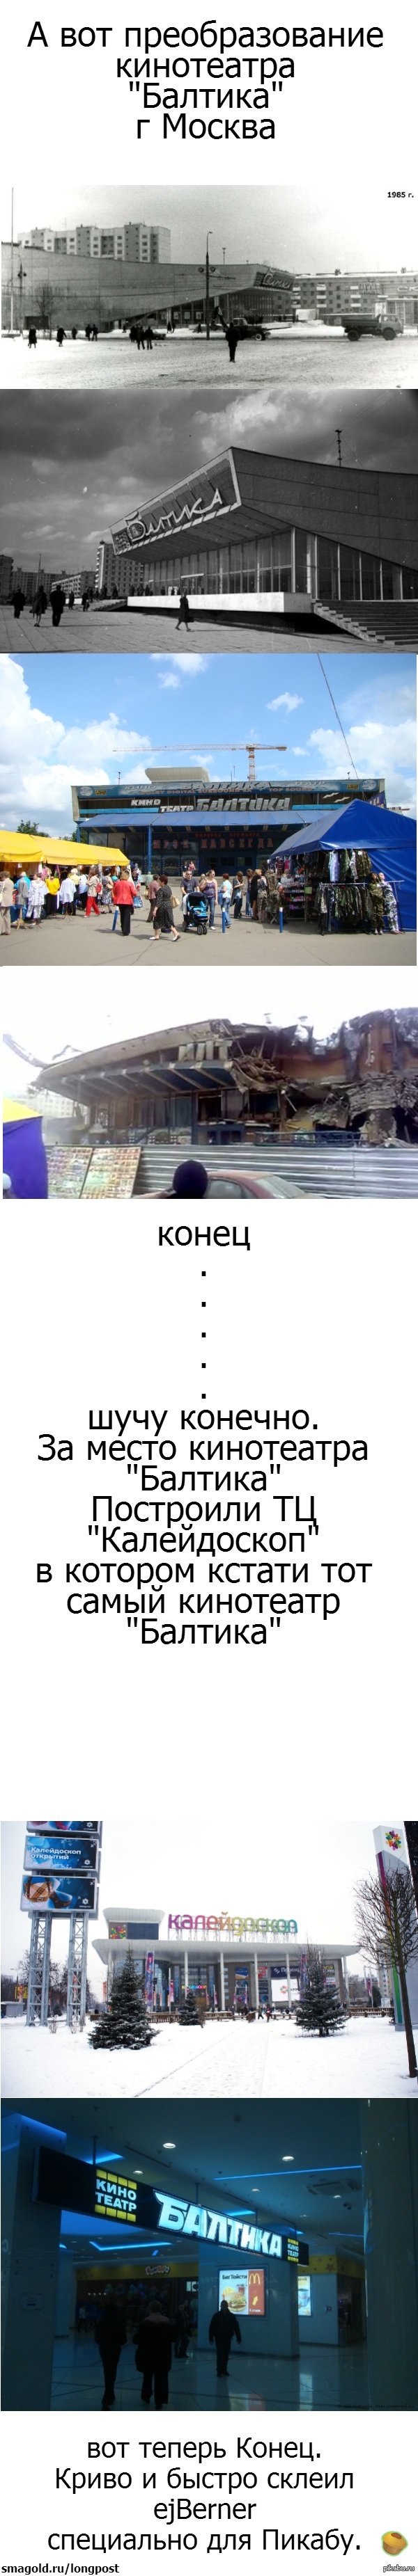    &quot; &quot; <a href="http://pikabu.ru/story/preobrazovanie_kinoteatra_1979217">http://pikabu.ru/story/_1979217</a>